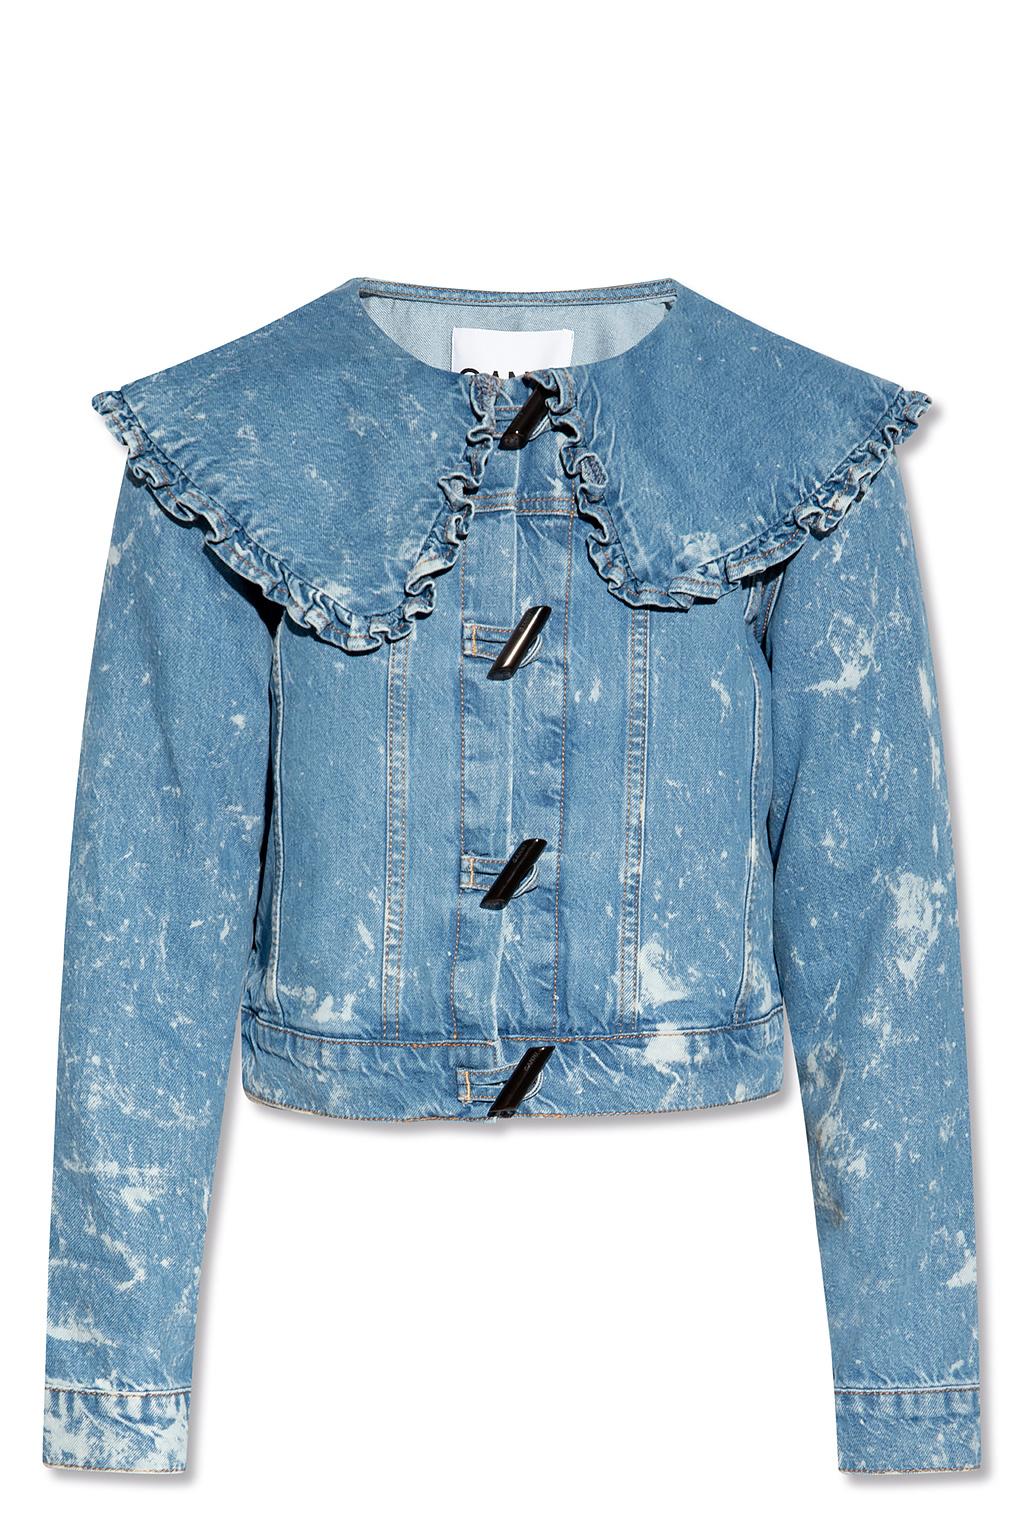 Ganni Denim Jacket With Ruffle Collar in Blue | Lyst UK